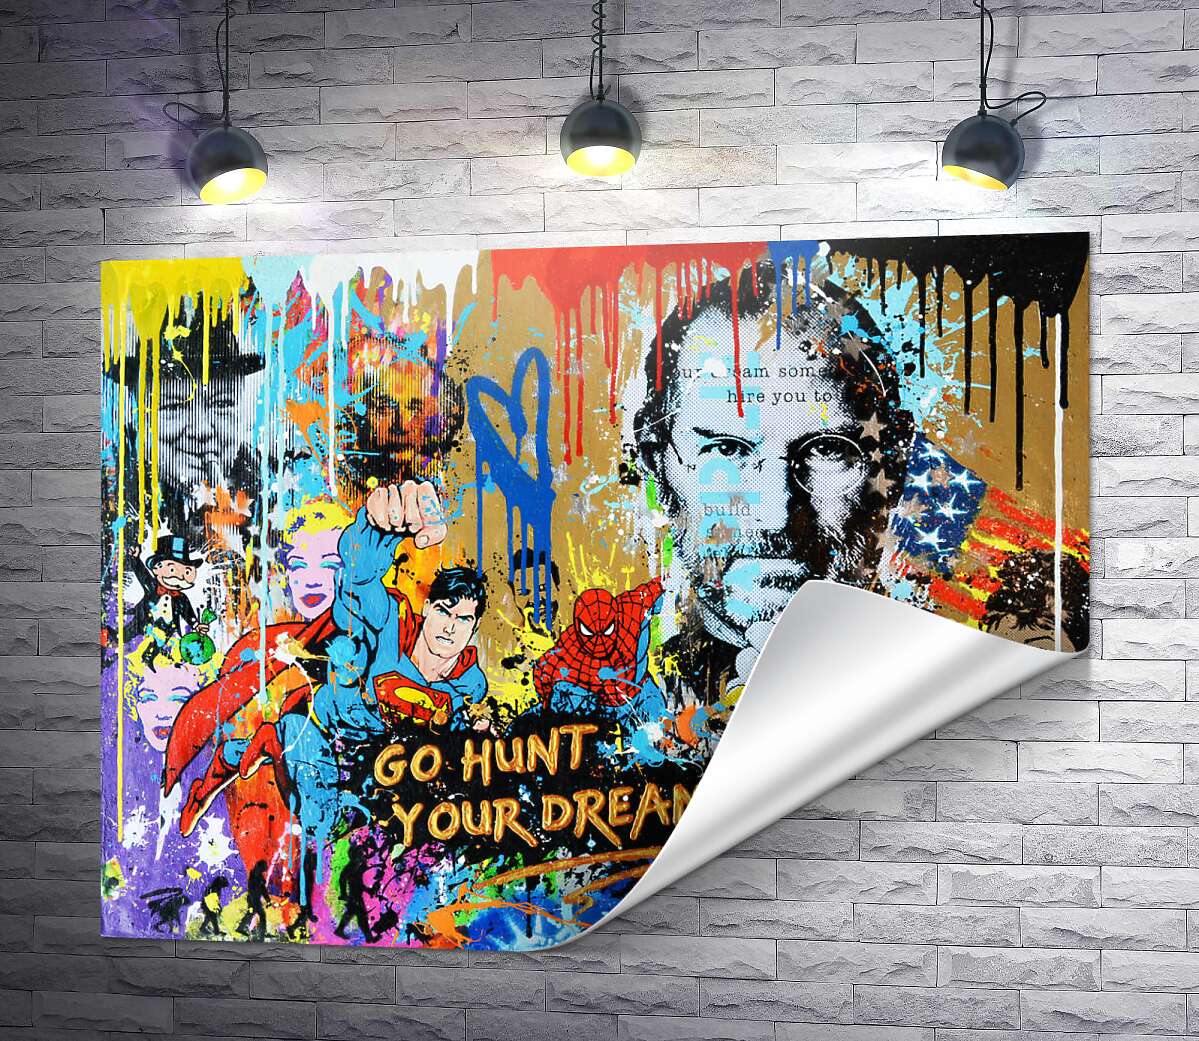 друк Арт графіті з Джобсом - Go hunt your dream